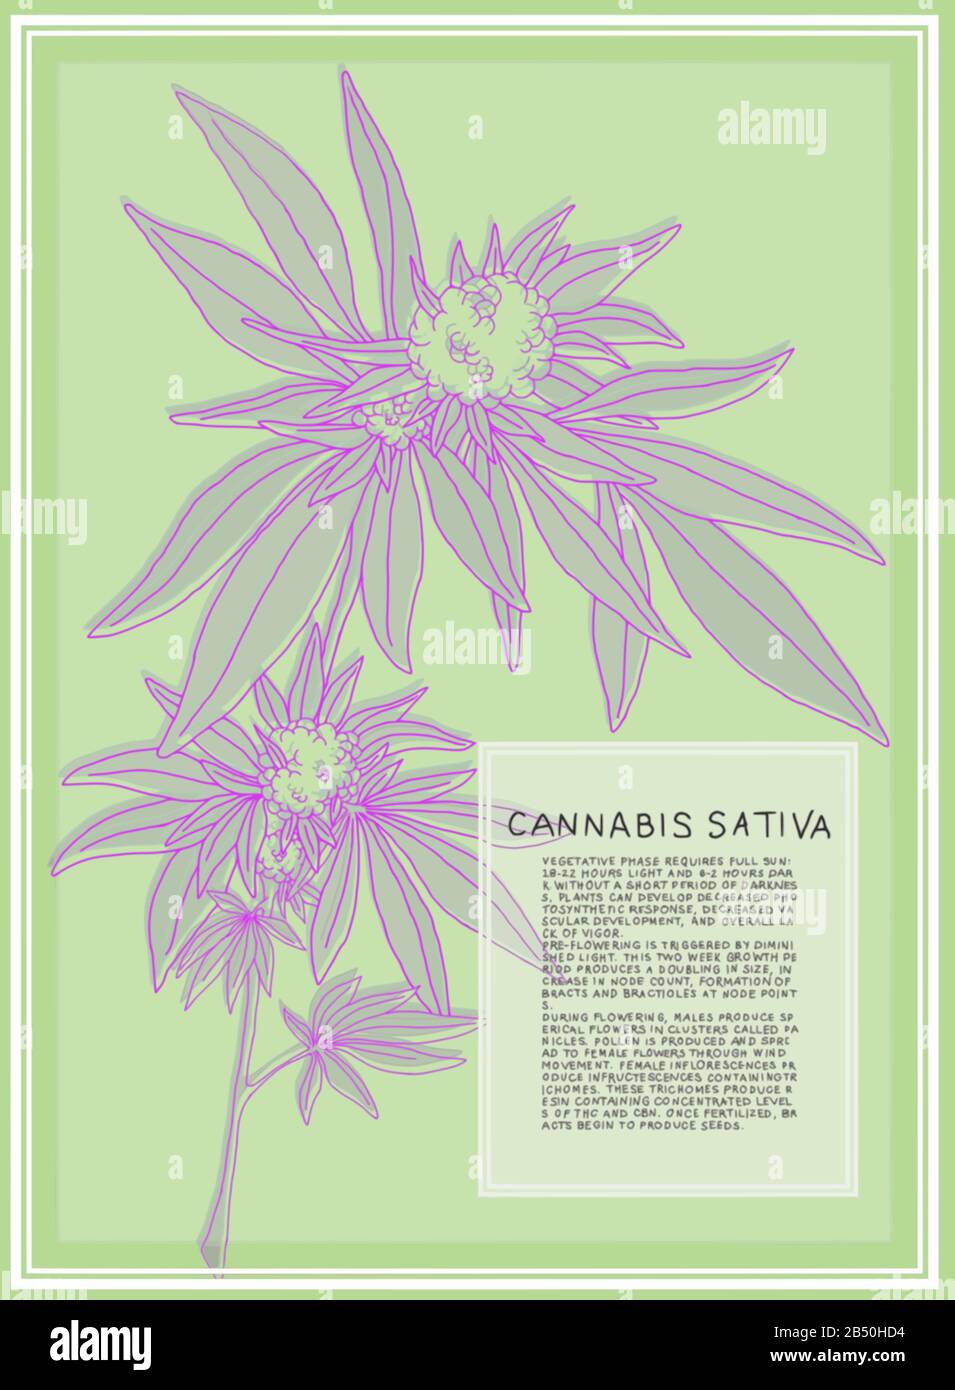 Antica illustrazione botanica della pianta di Cannabis Sativa. Grafica vettoriale scalabile per poster di grandi dimensioni. Il testo descrive le fasi di fioritura della pianta. Illustrazione Vettoriale